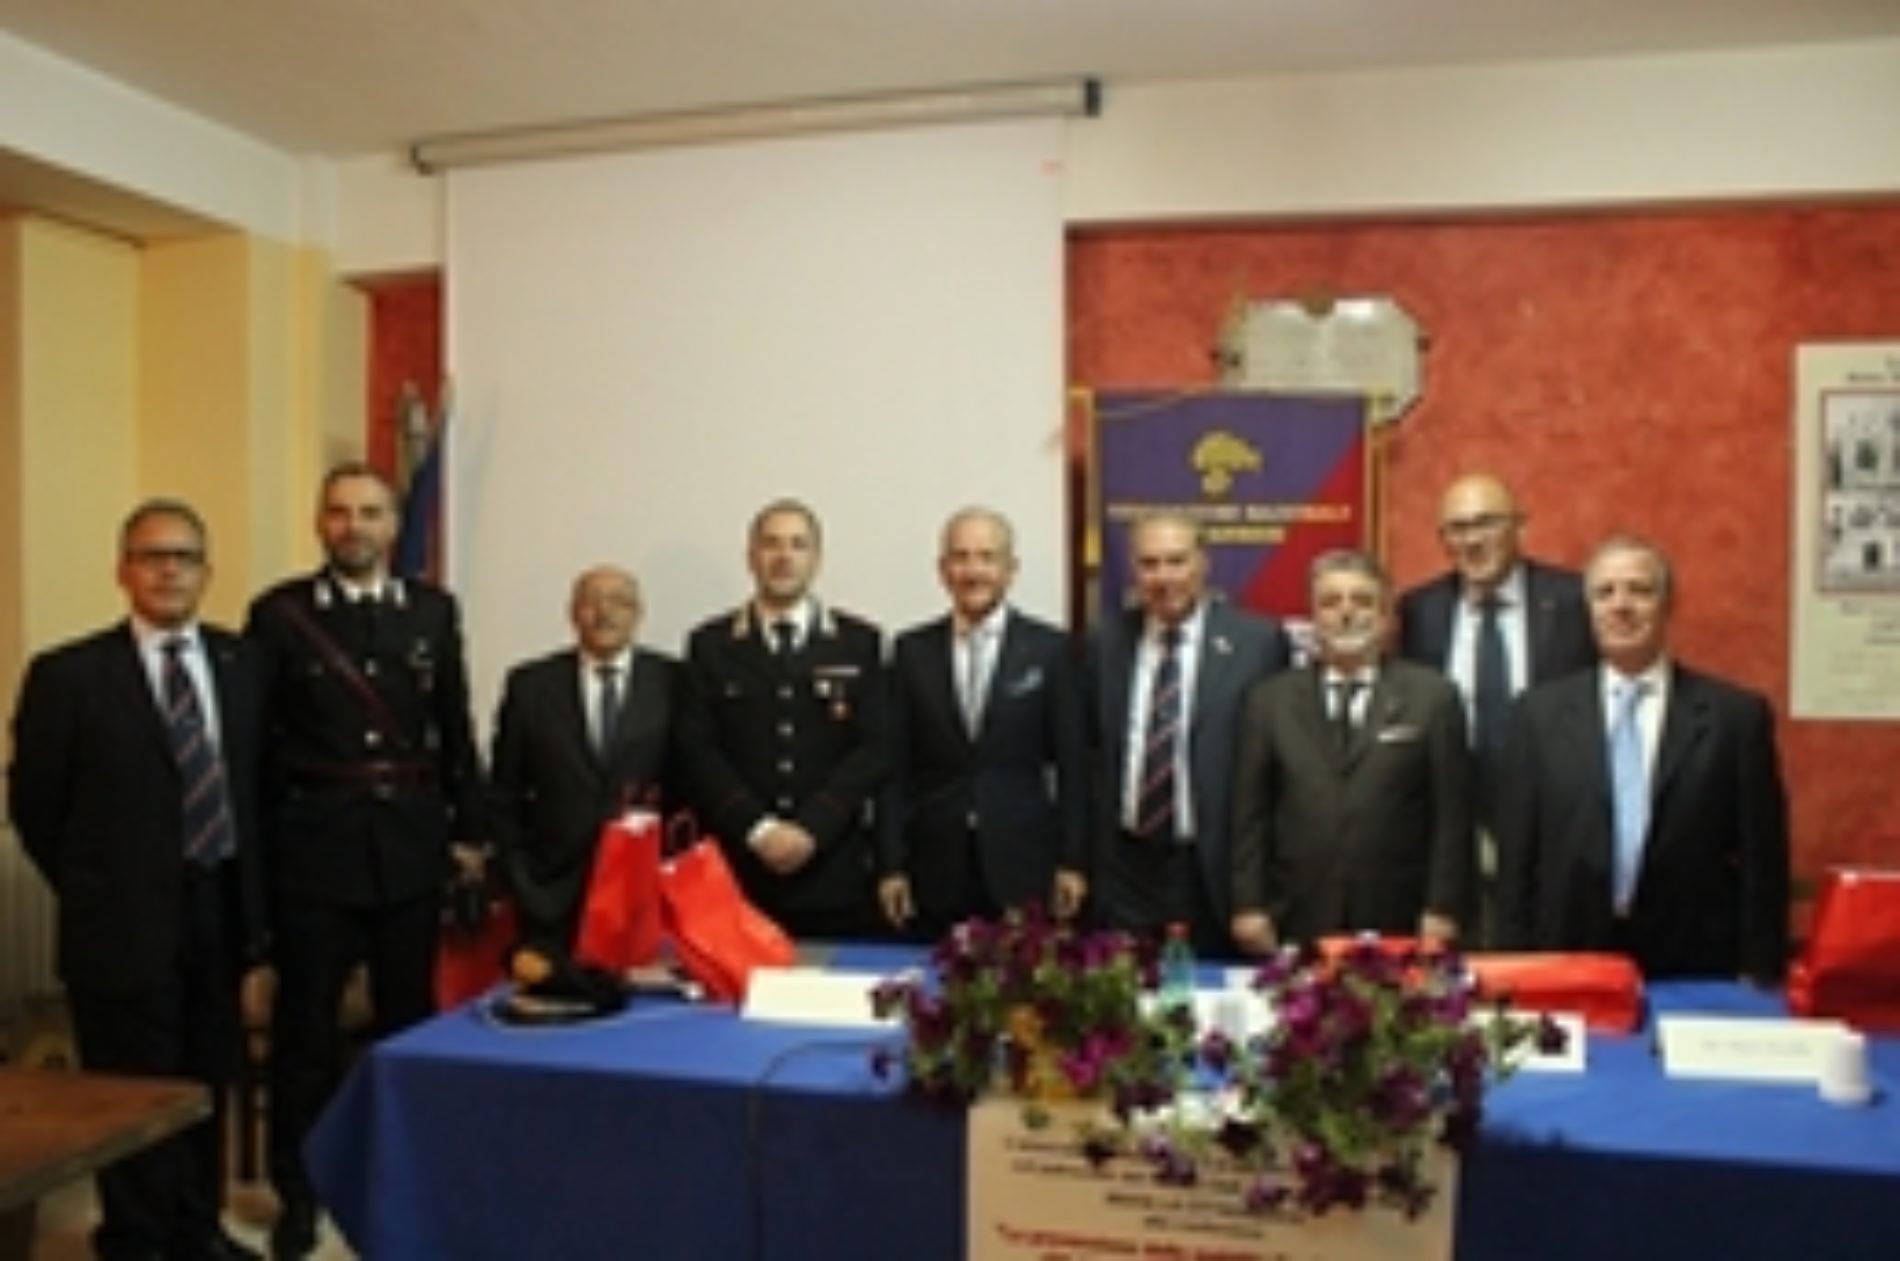 Associazione nazionale carabinieri organizza conferenza su salute, benessere e legalità